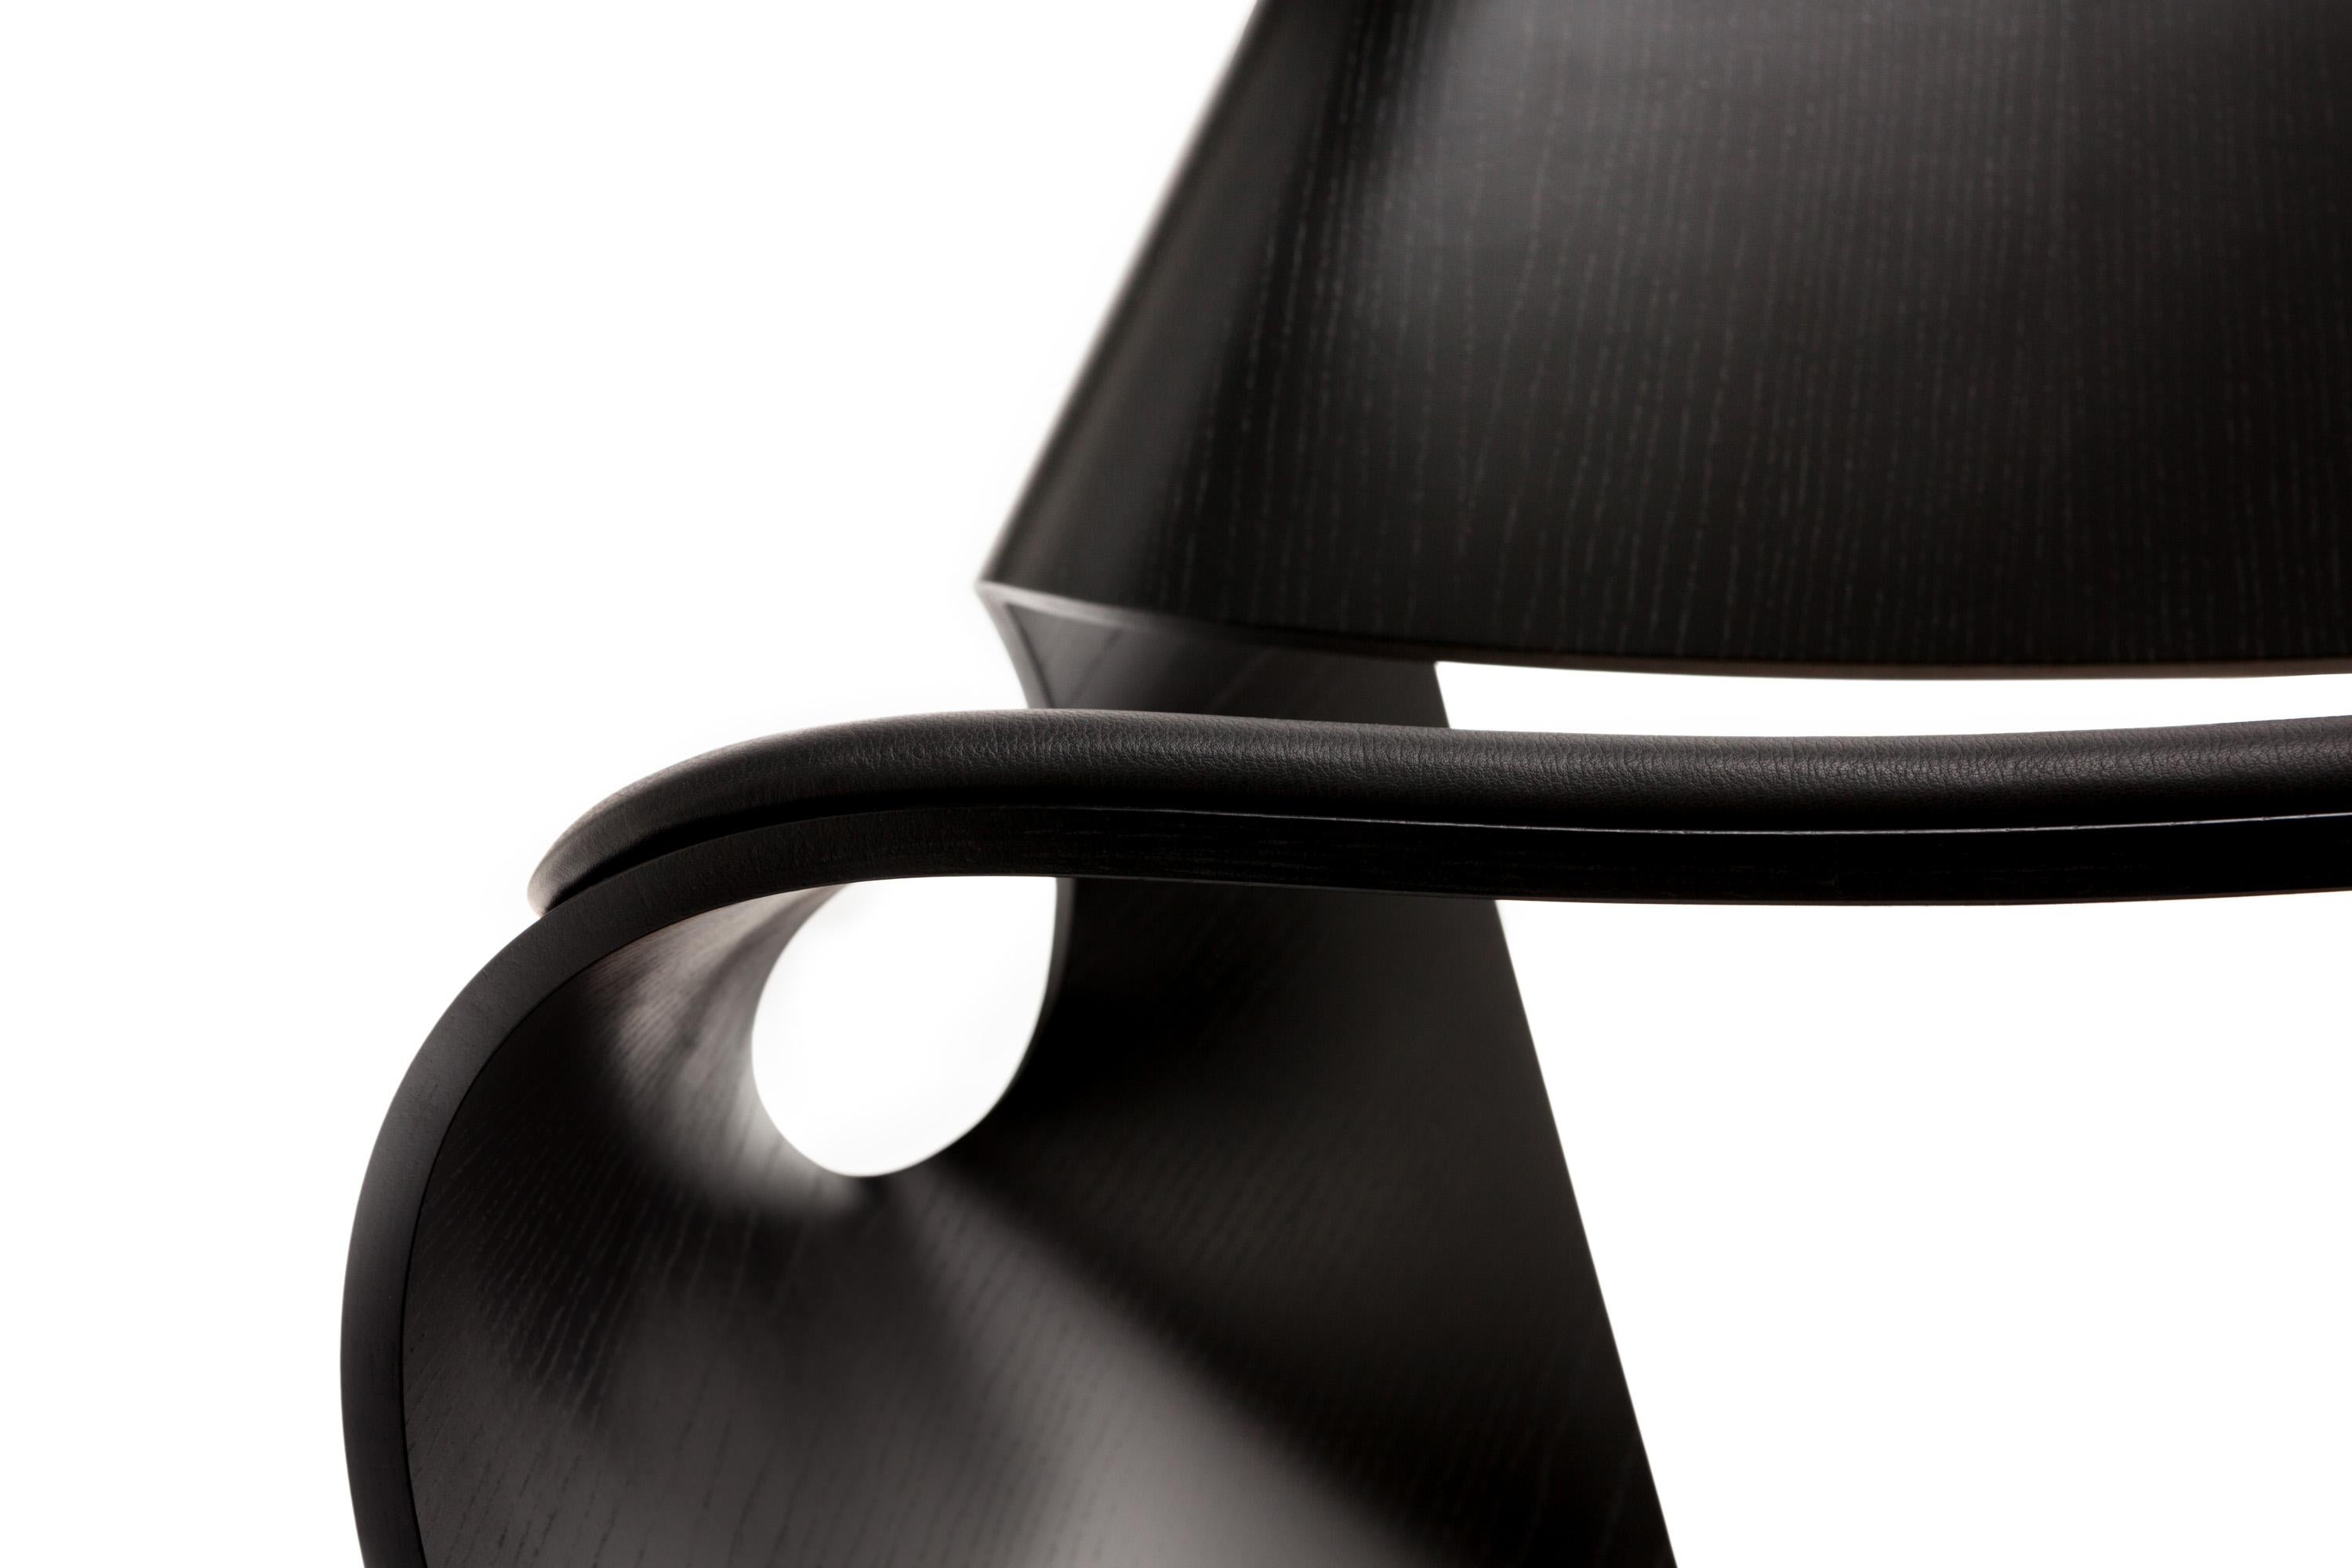 La chaise contemporaine Cowrie s'inspire des lignes concaves organiques des coquillages. Présenté dans l'ouvrage 1000 Chairs de Taschen, ce design emblématique présente une forme curviligne qui est le résultat d'un processus de recherche et